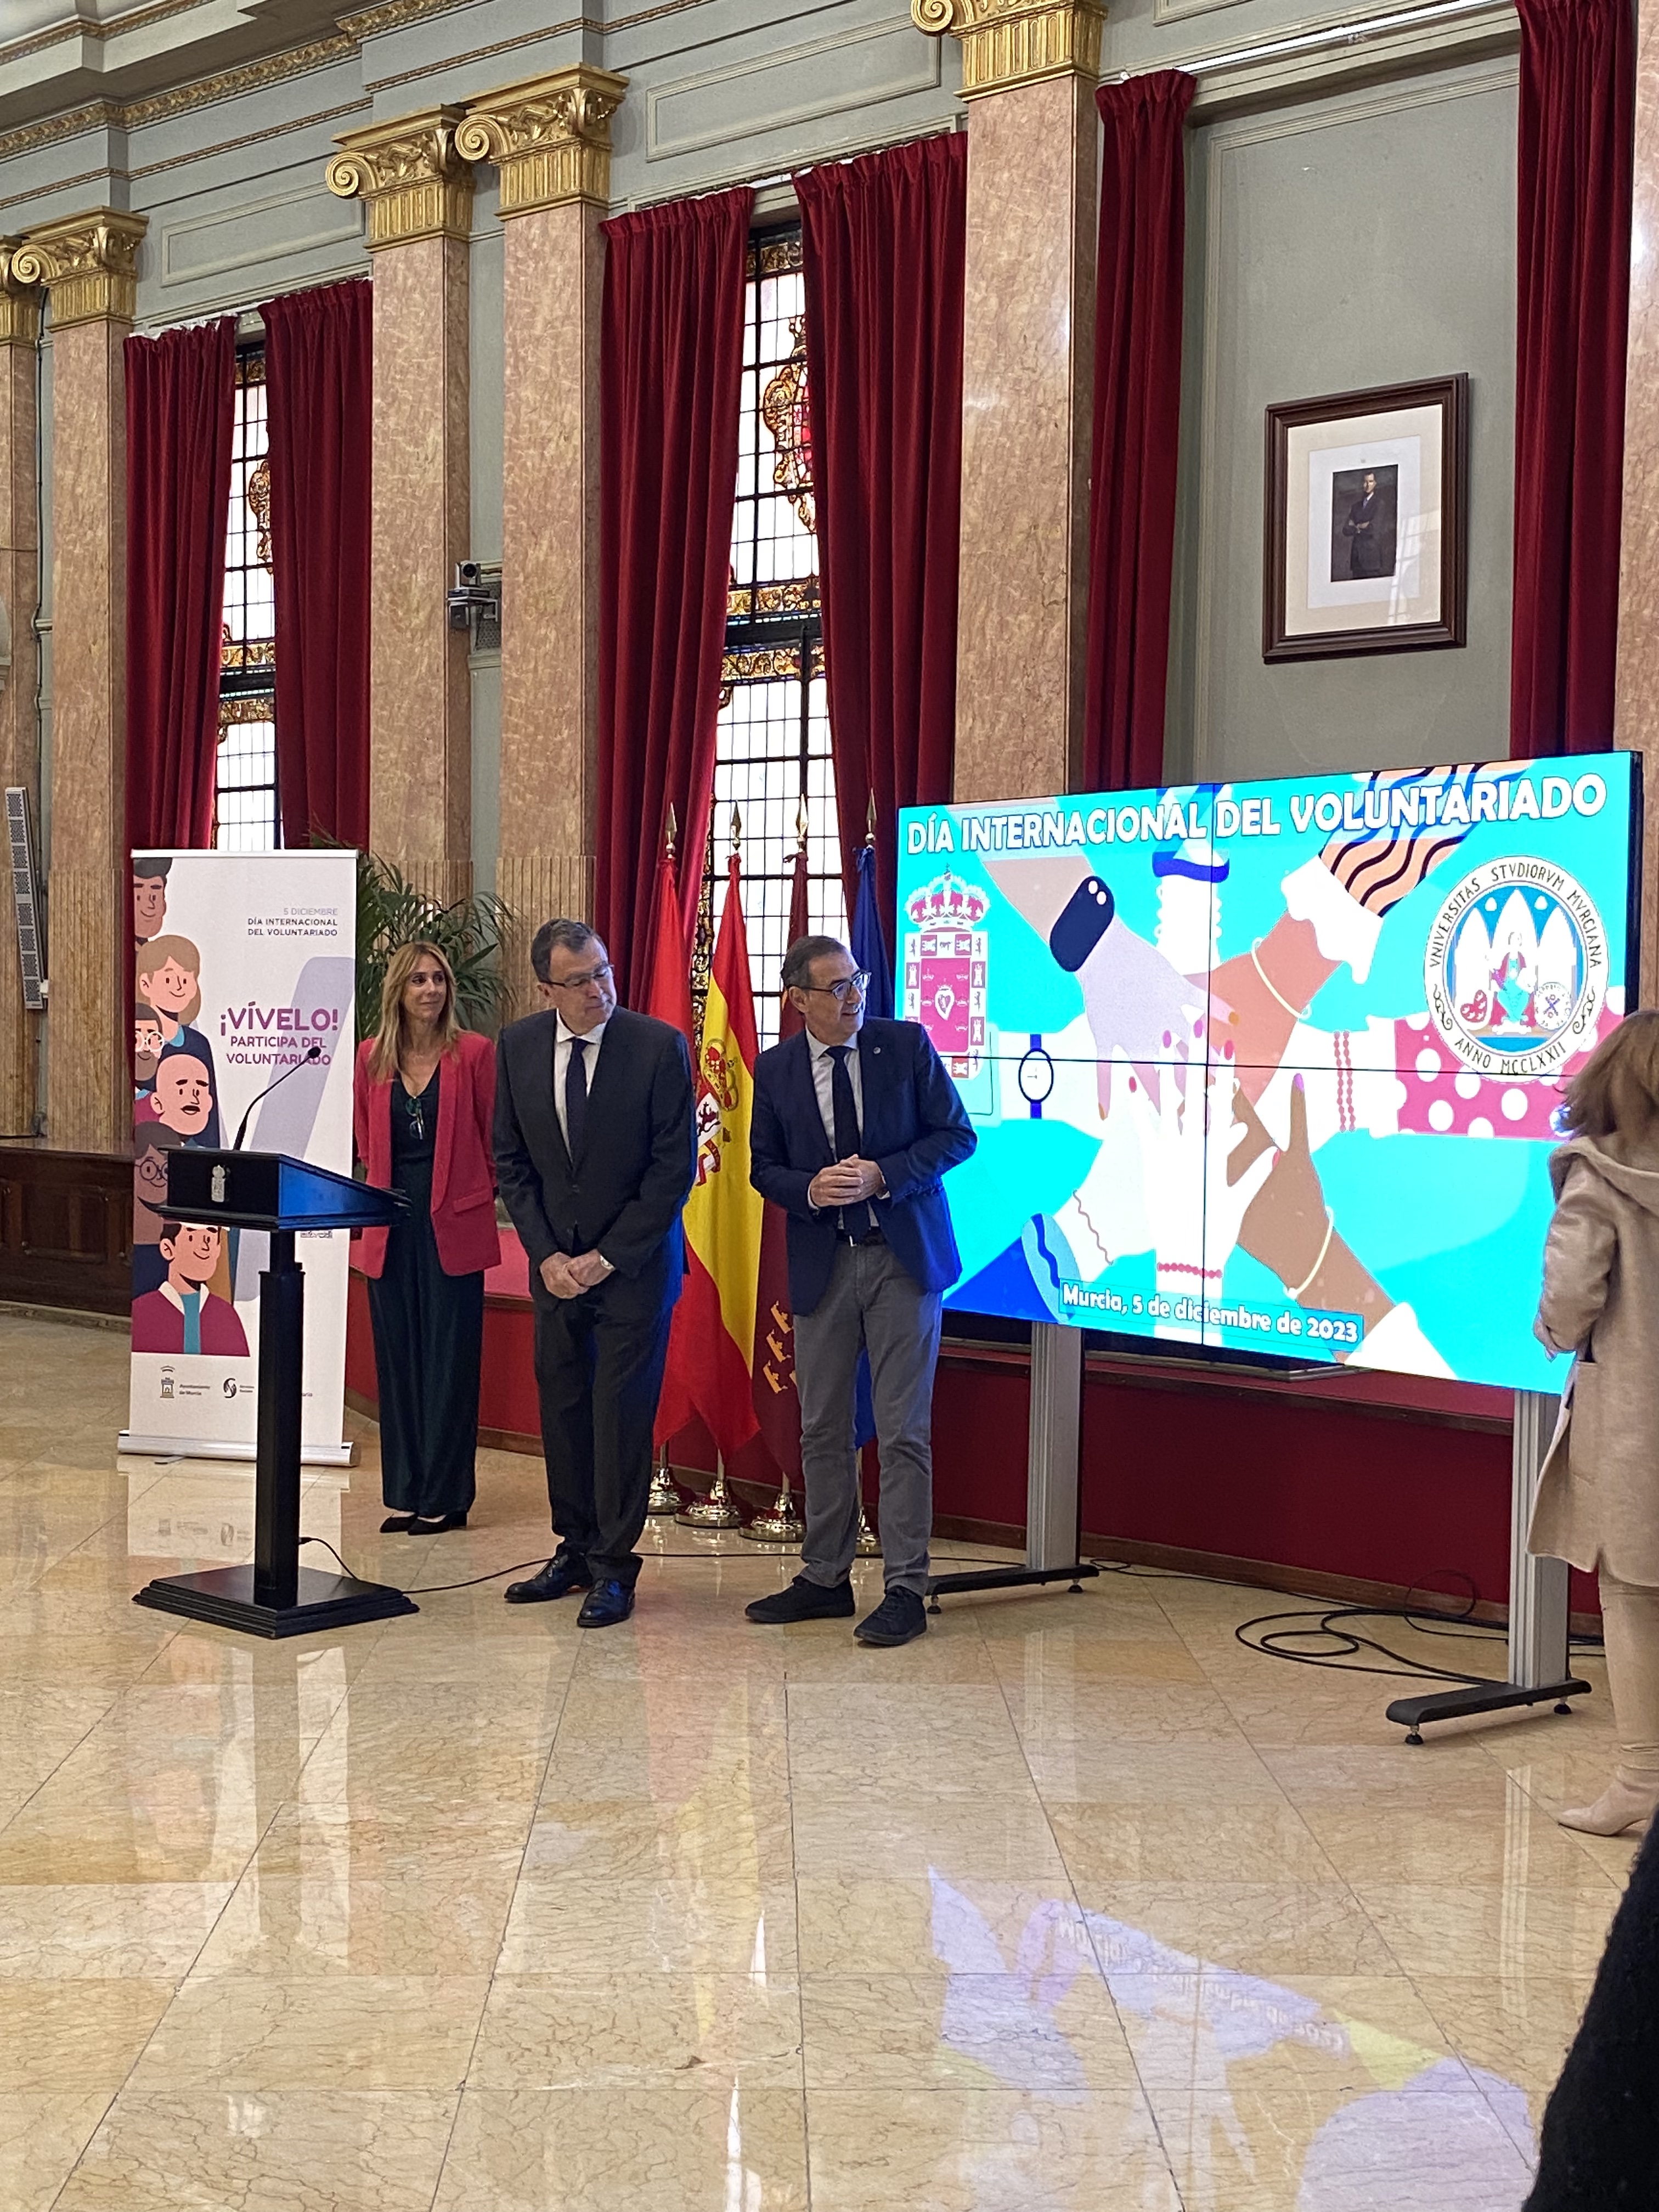 La Universidad de Murcia y el Ayuntamiento de Murcia firman la renovación del Convenio de Voluntariado Universitario, en el Día Internacional del Voluntariado